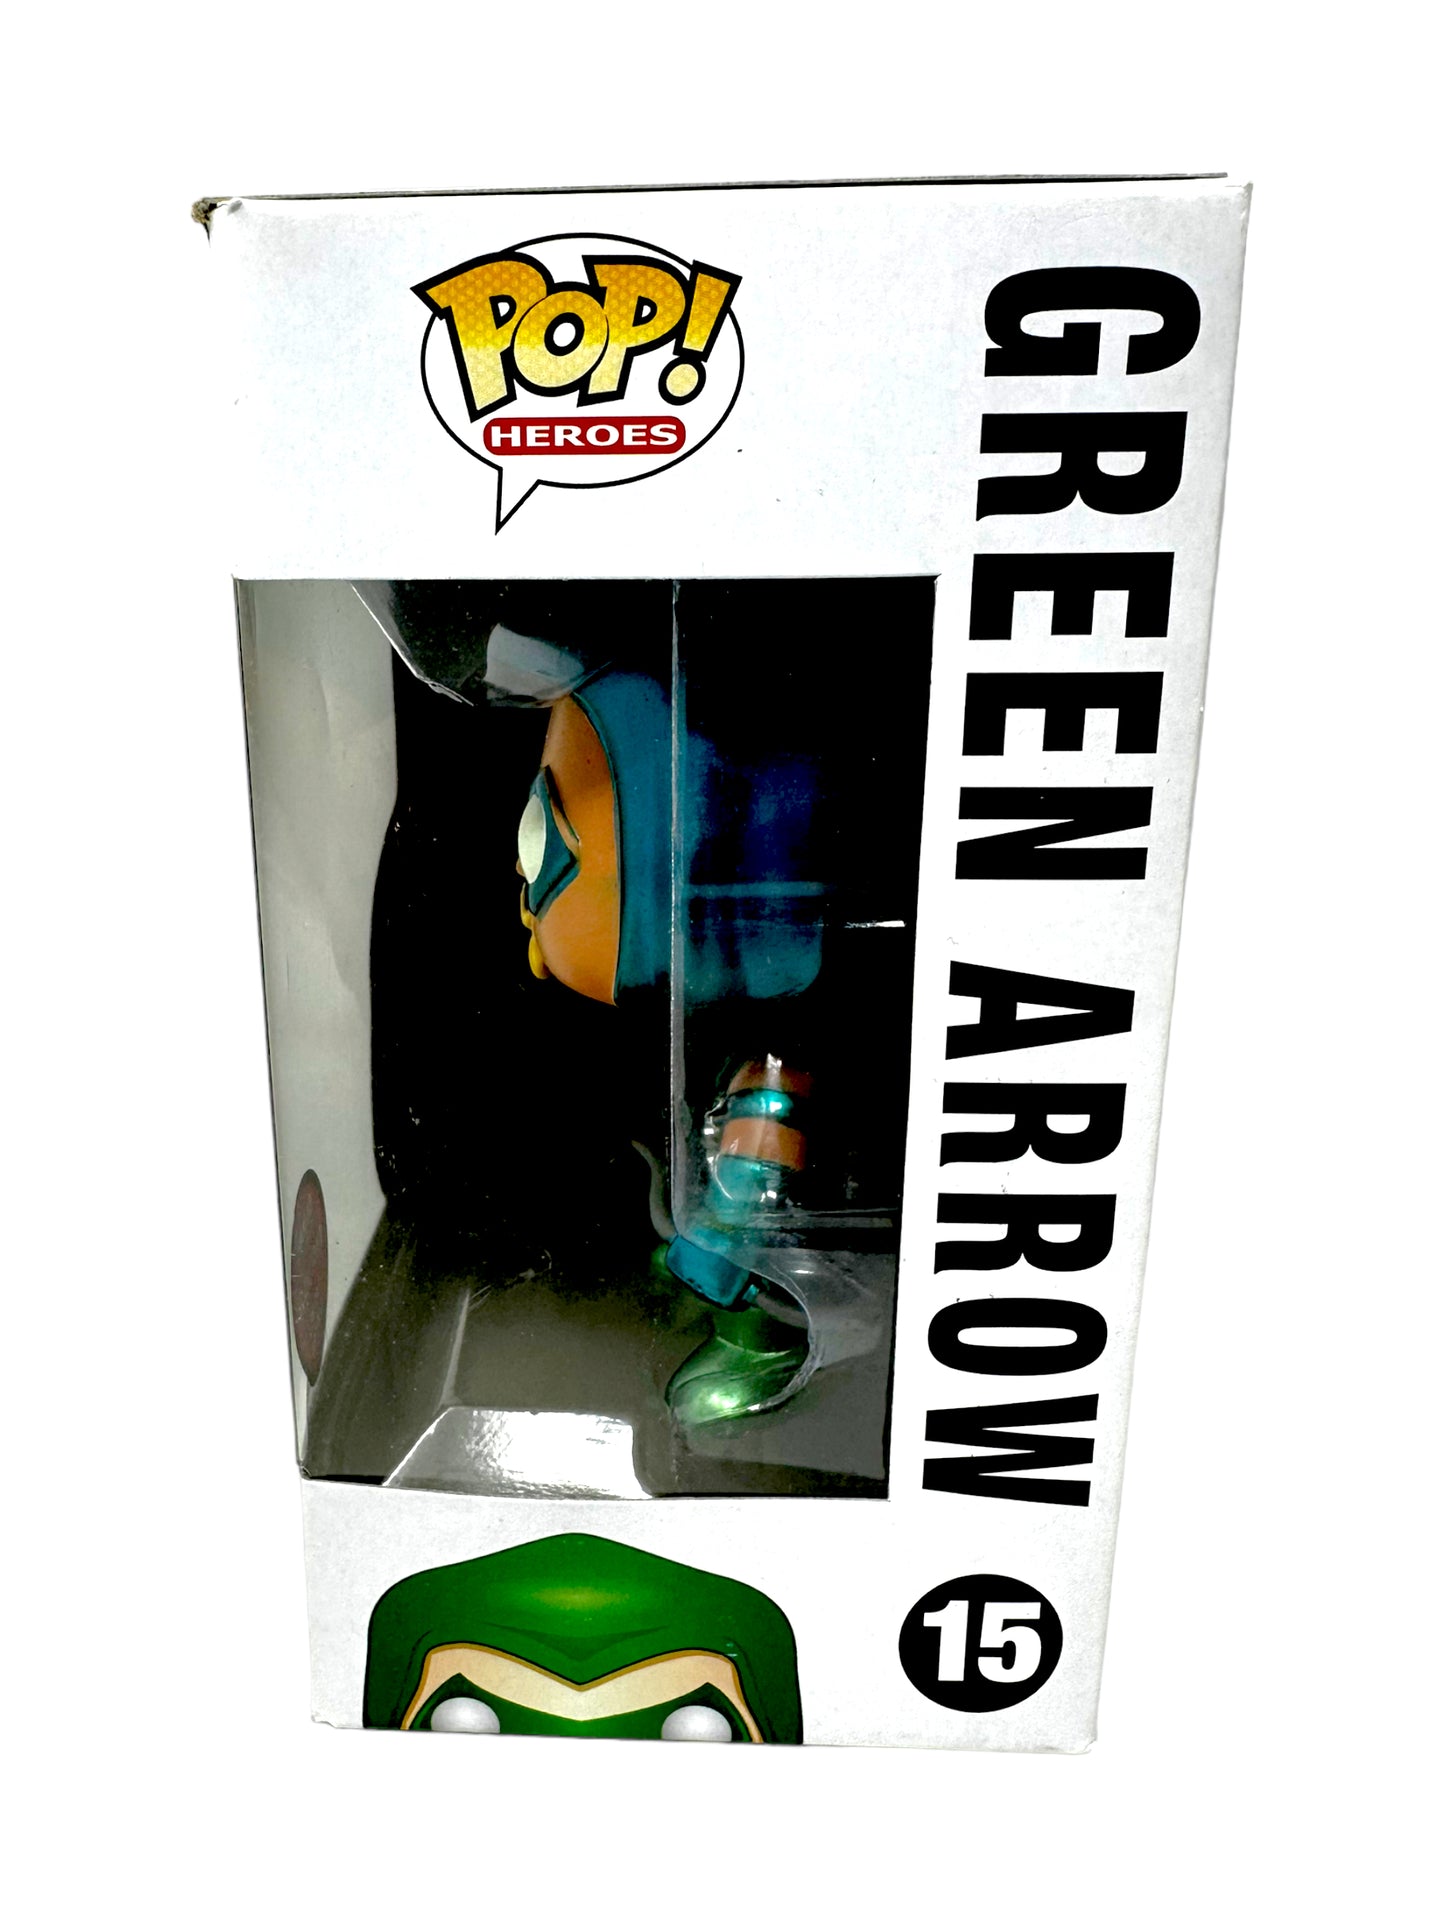 Sold 9/24 2012 Gemini Exclusive Green Arrow 15 (Metallic) LE240